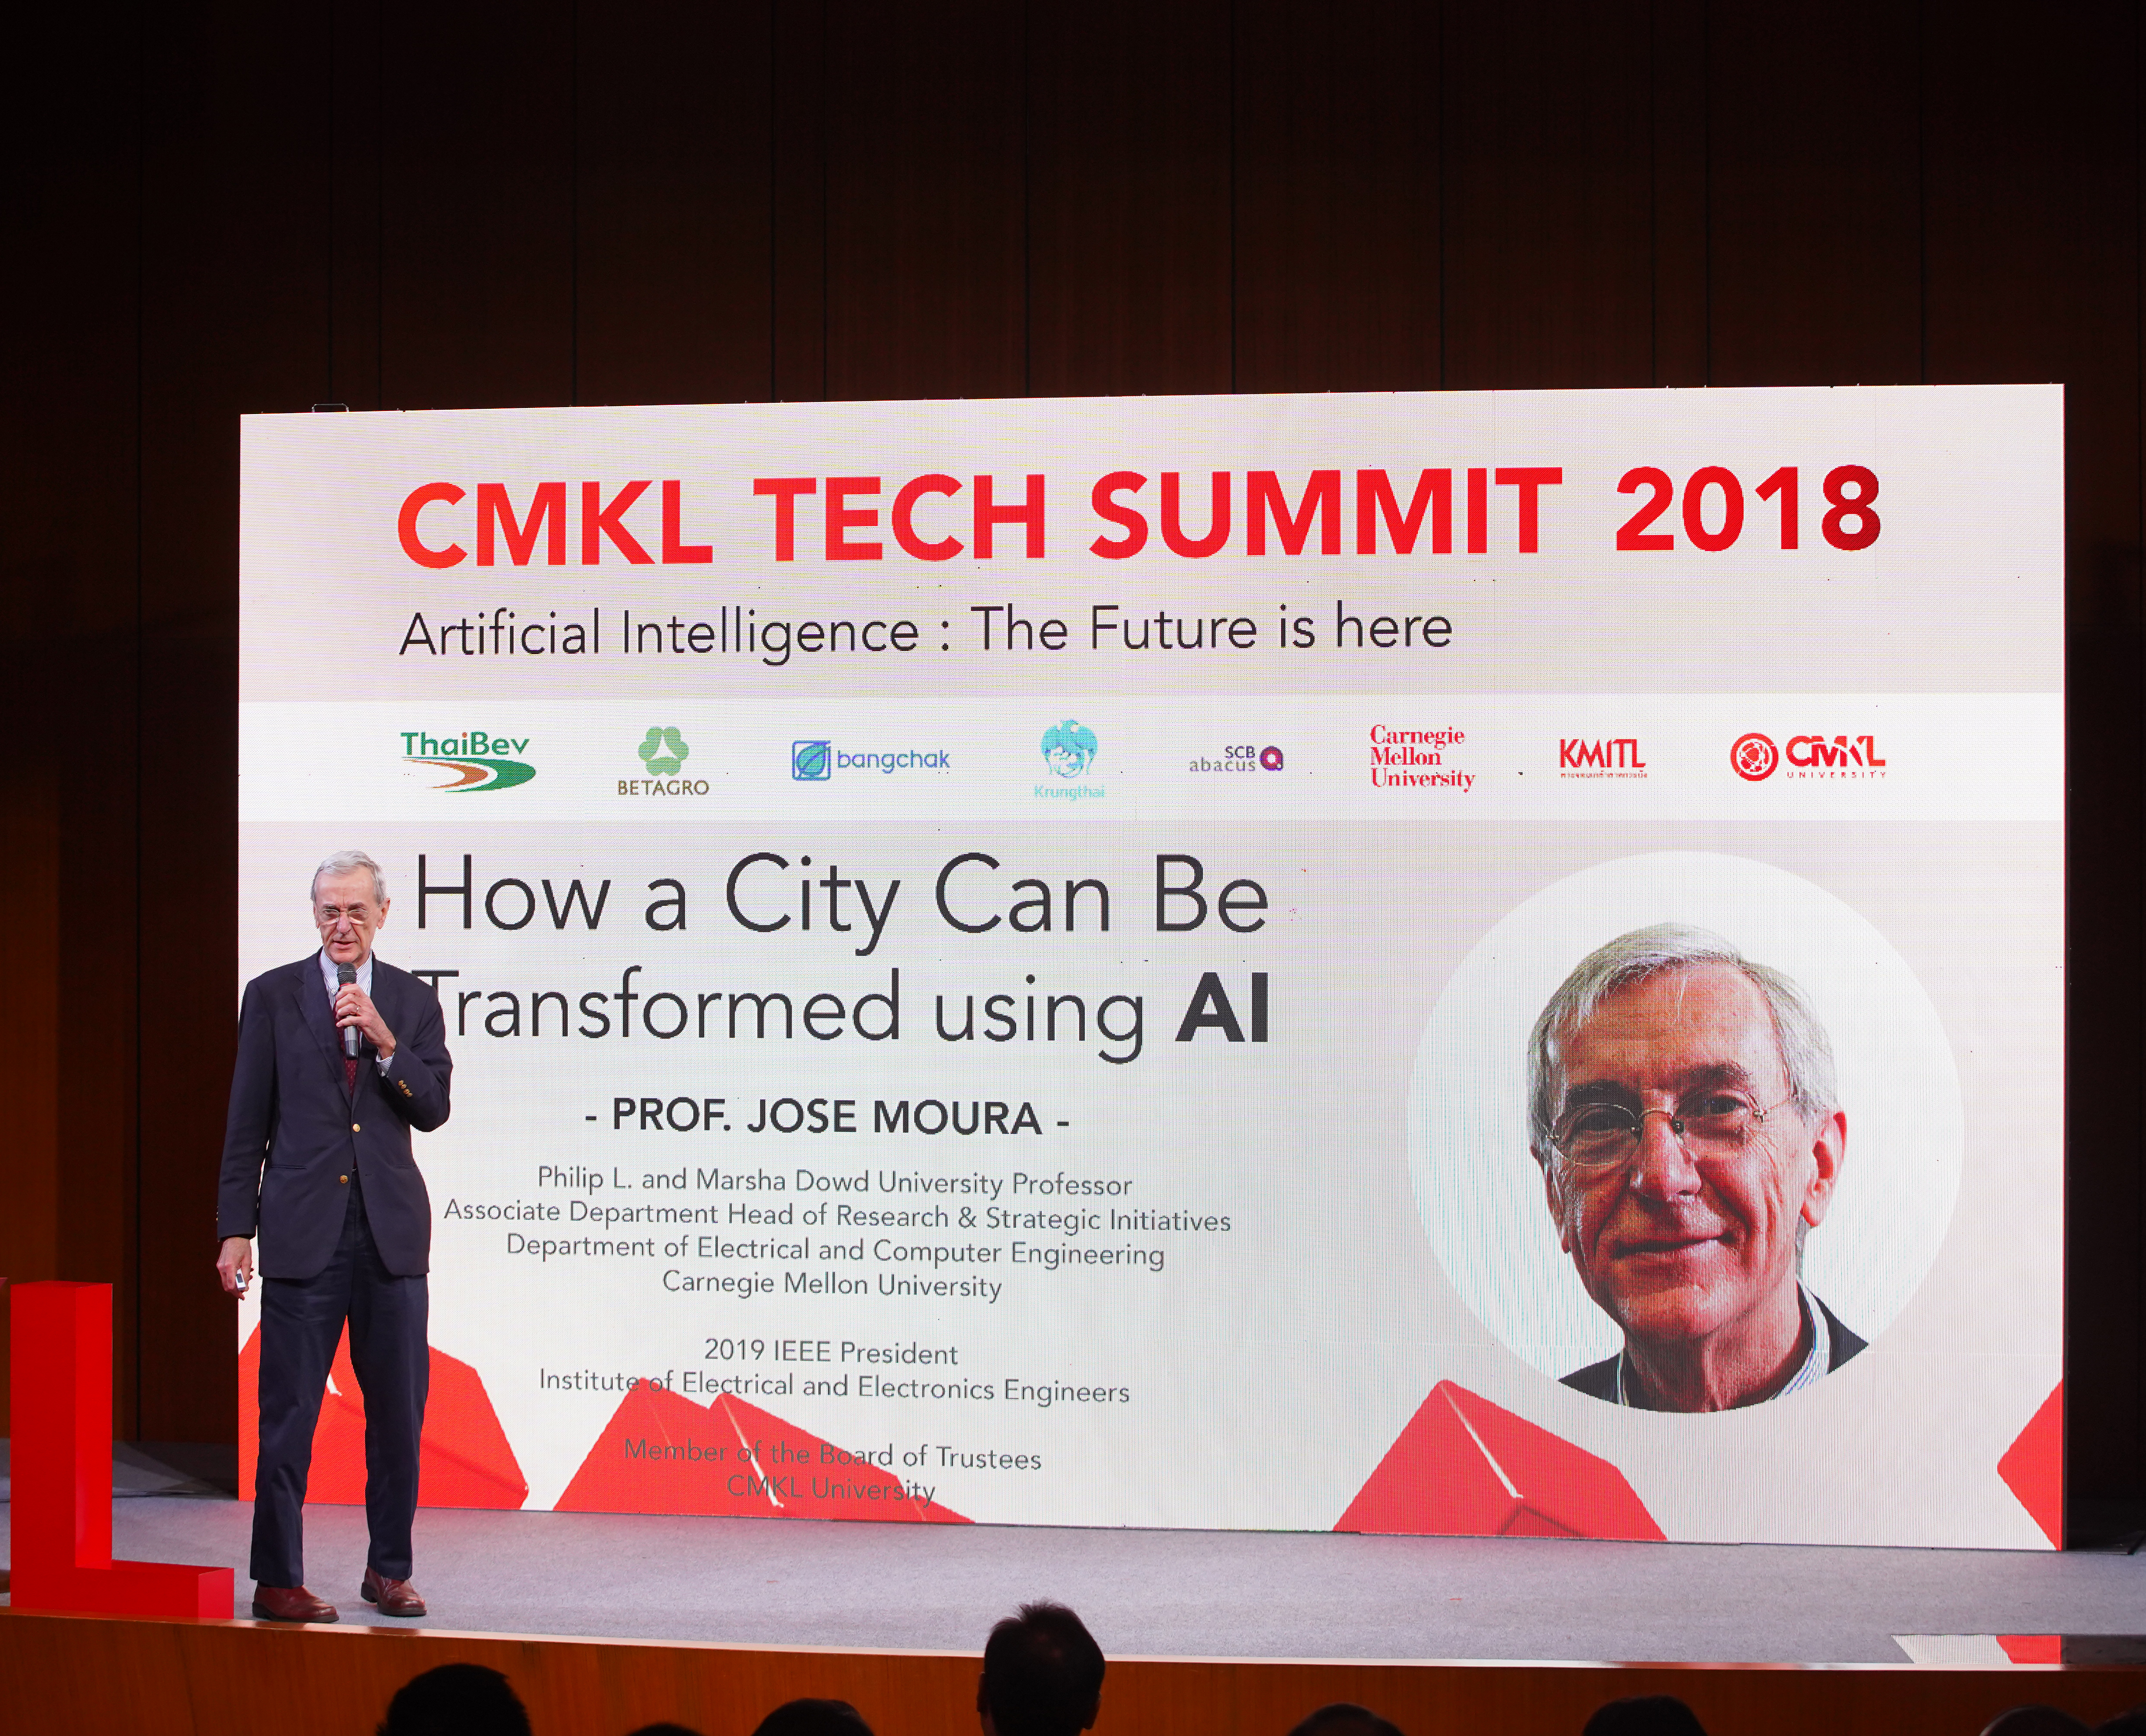 Jose Moura talking at the CMKL Tech Summit